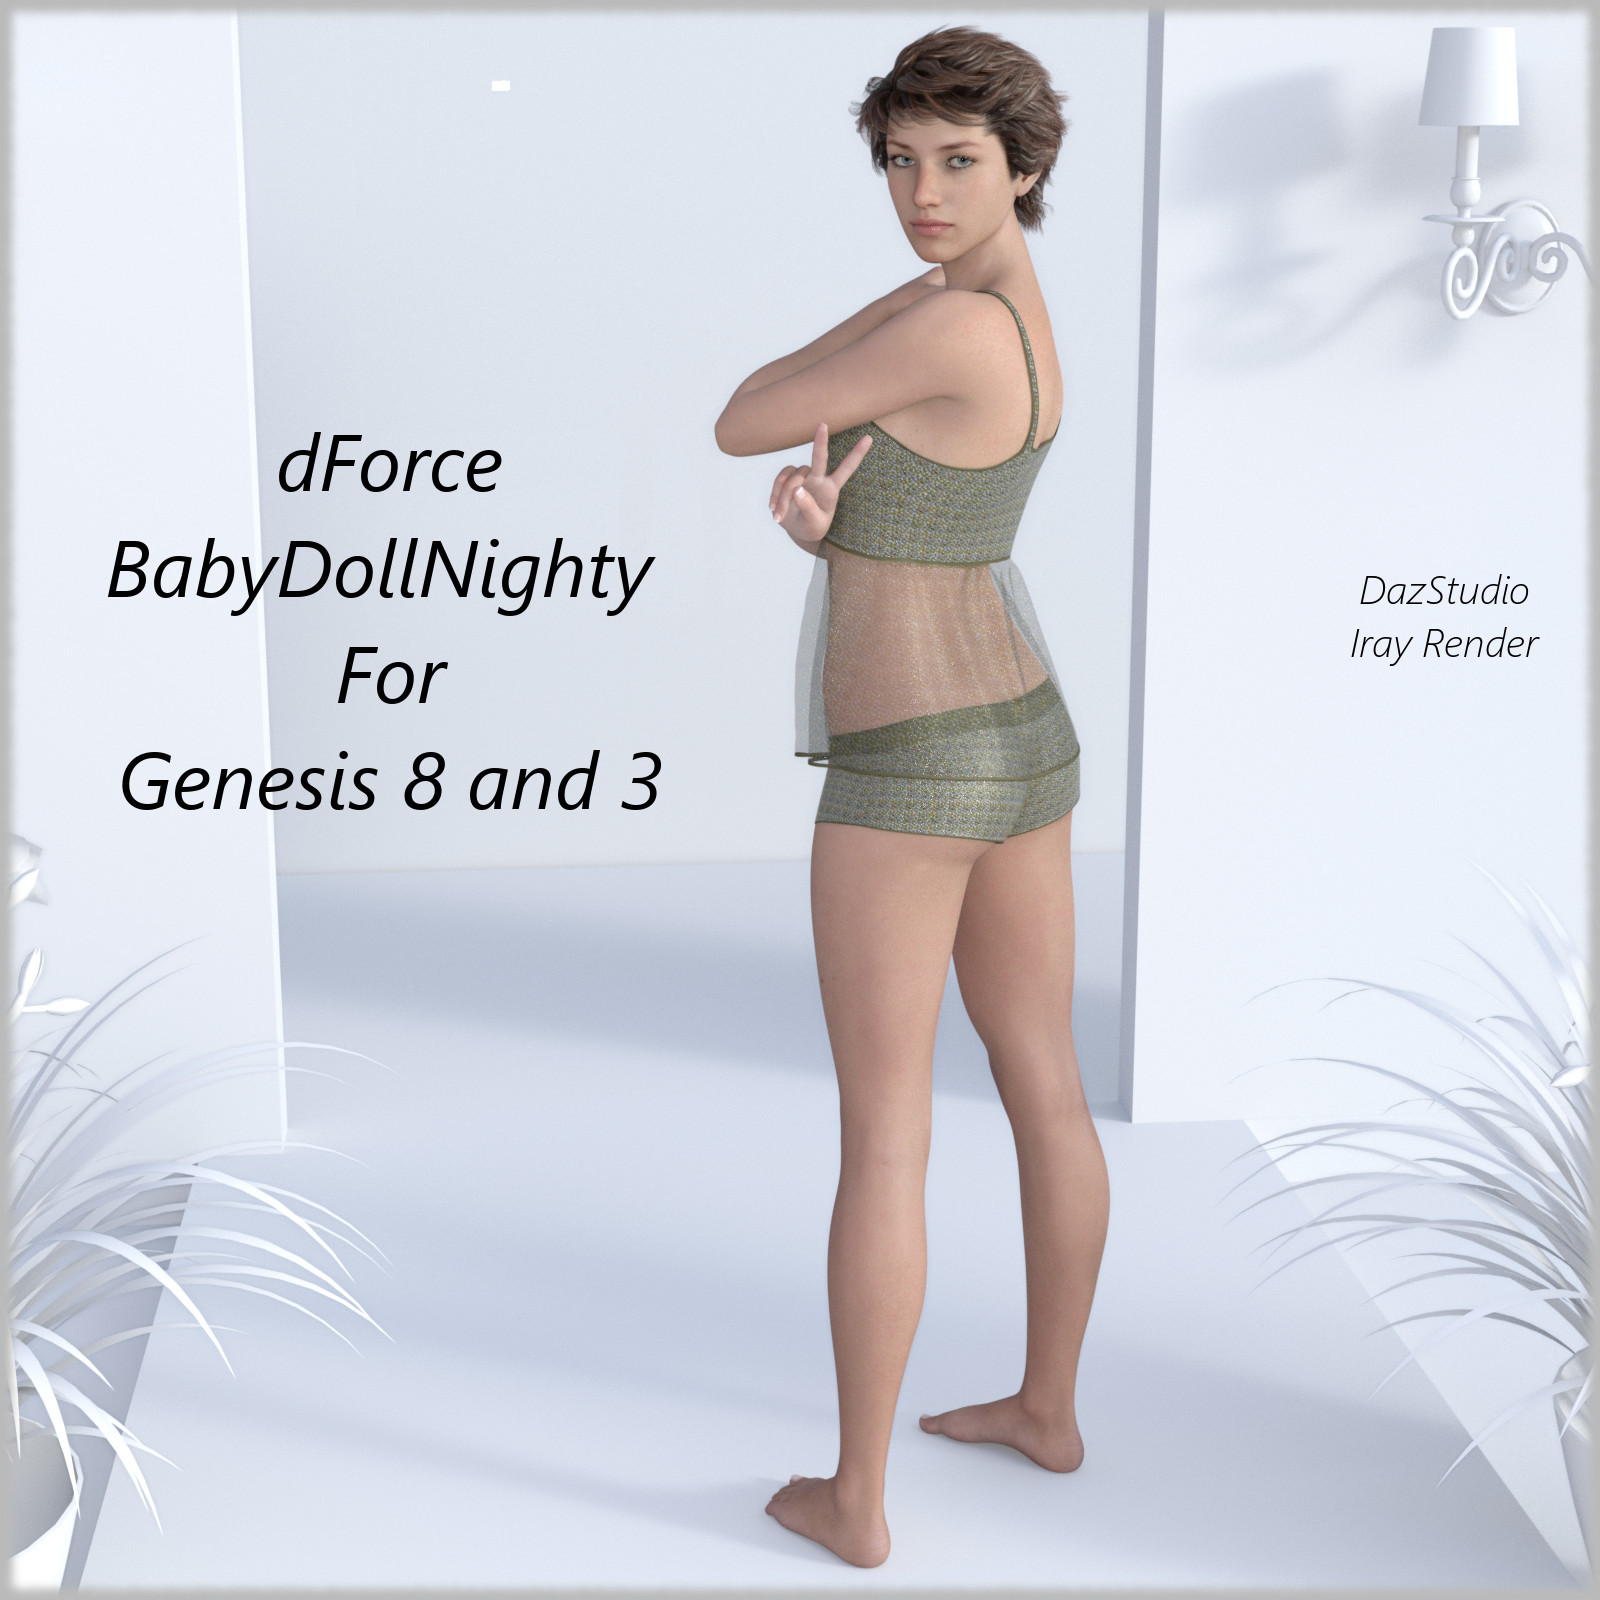 dForce BabyDollNighty For genesis 8 and 3_DAZ3DDL